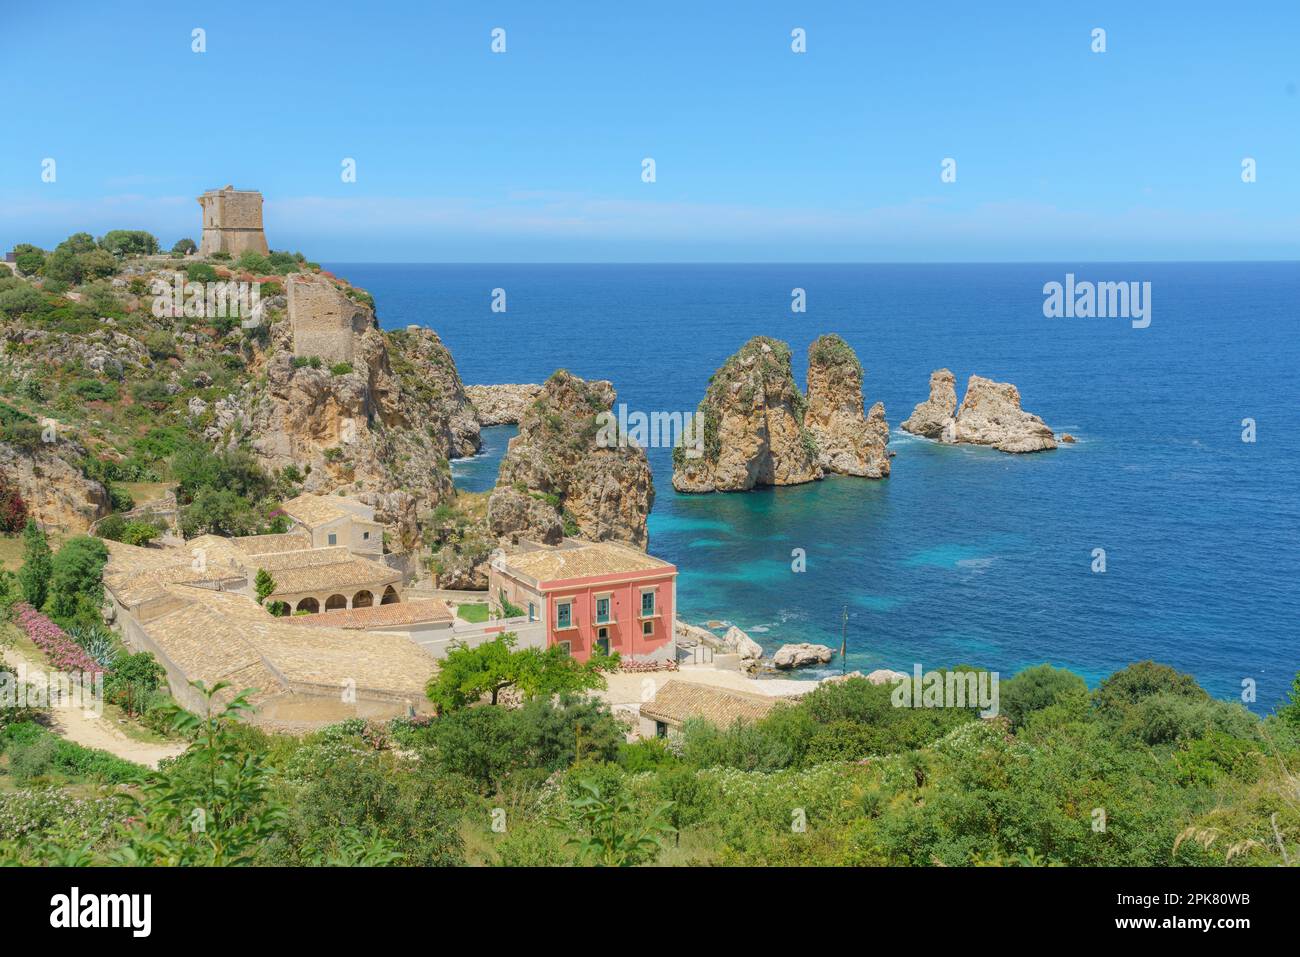 Tonnara di Scopello vista estiva. Bellissimo paesaggio di Sicilia, Italia, Europa. Calma mattina mare del Mediterraneo. Foto Stock